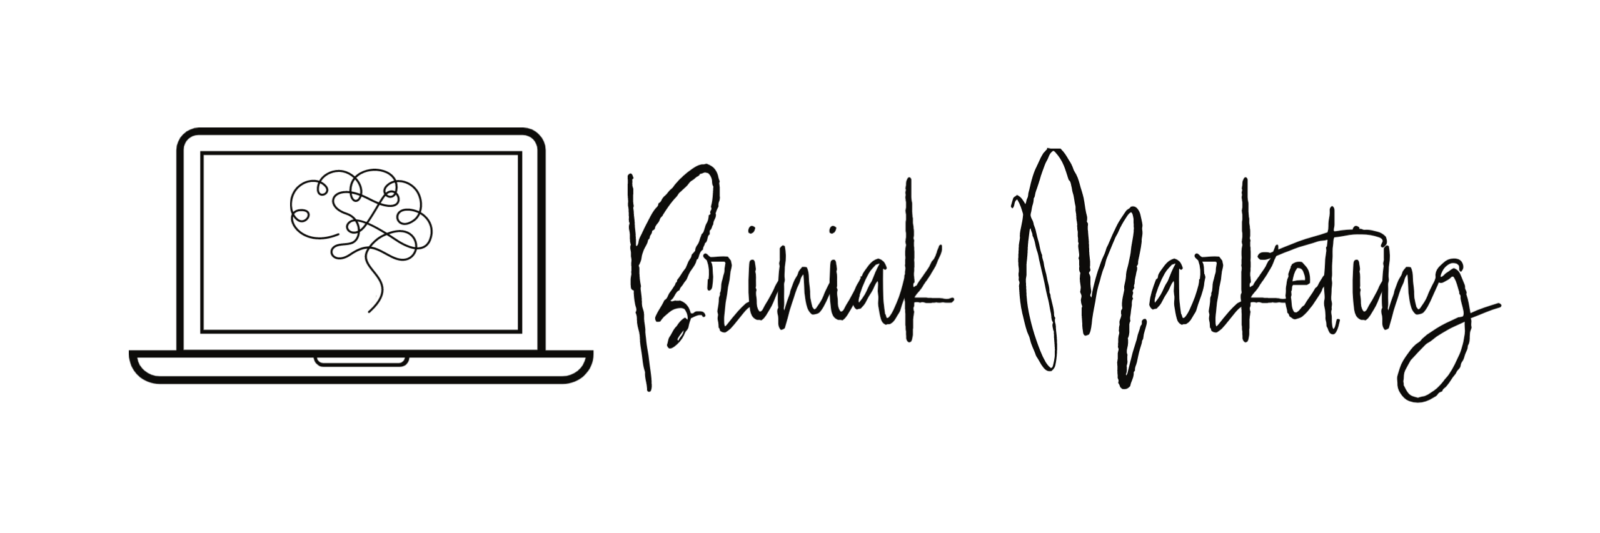 Briniak logo